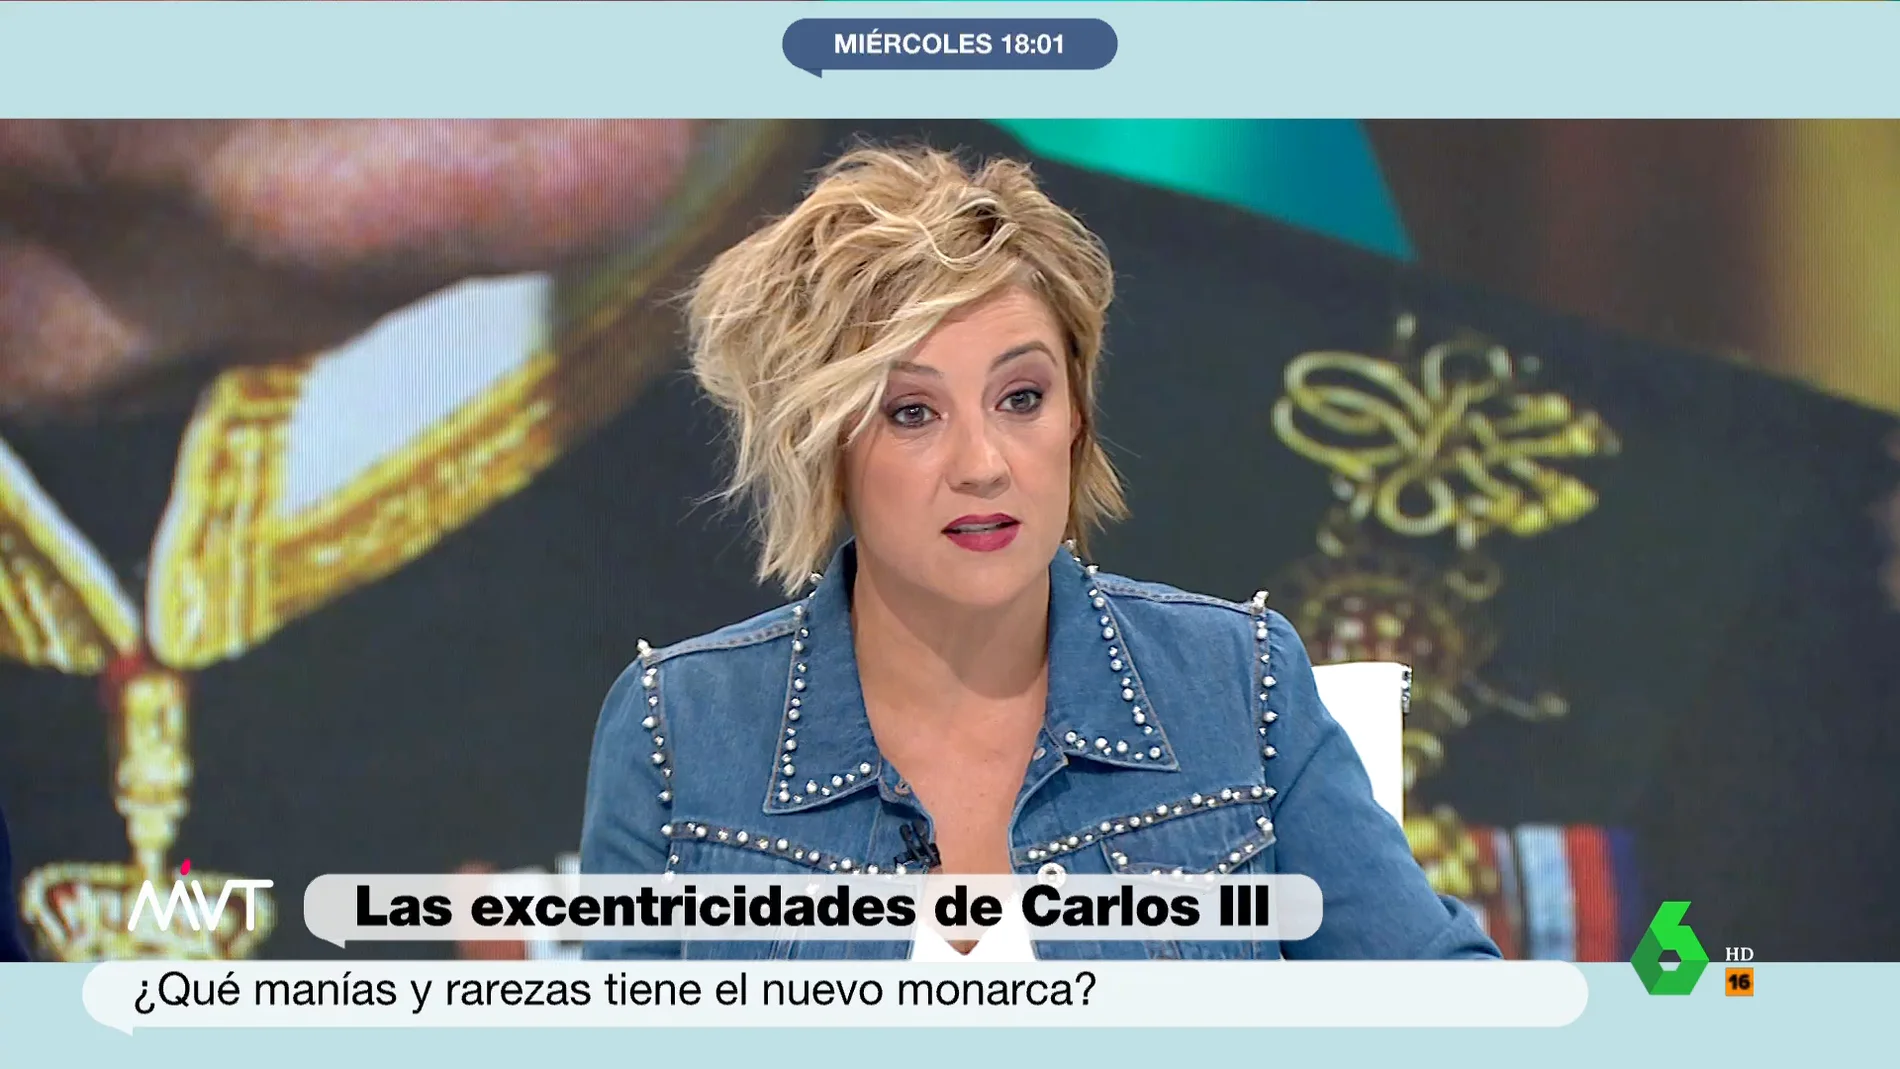 La reacción de Cristina Pardo a una de las excentricidades de Carlos III: "¡Eso es una guarrada!"